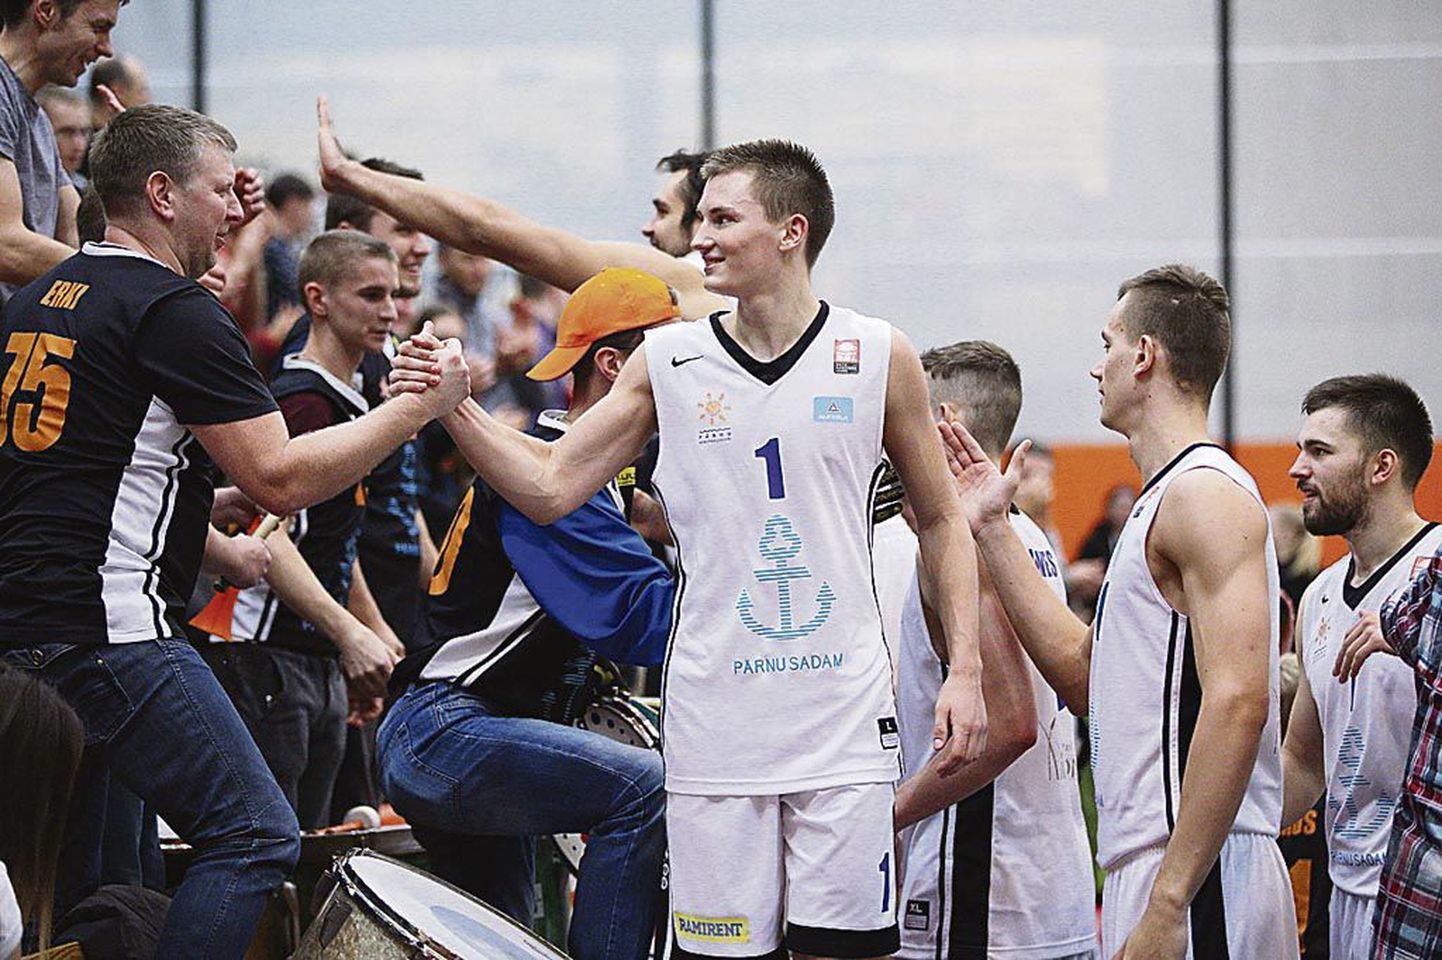 Pärast võitu tänasid Pärnu korvpalliklubi mängijad fänne ja fännid korvpallureid esimese võidetud medali eest.